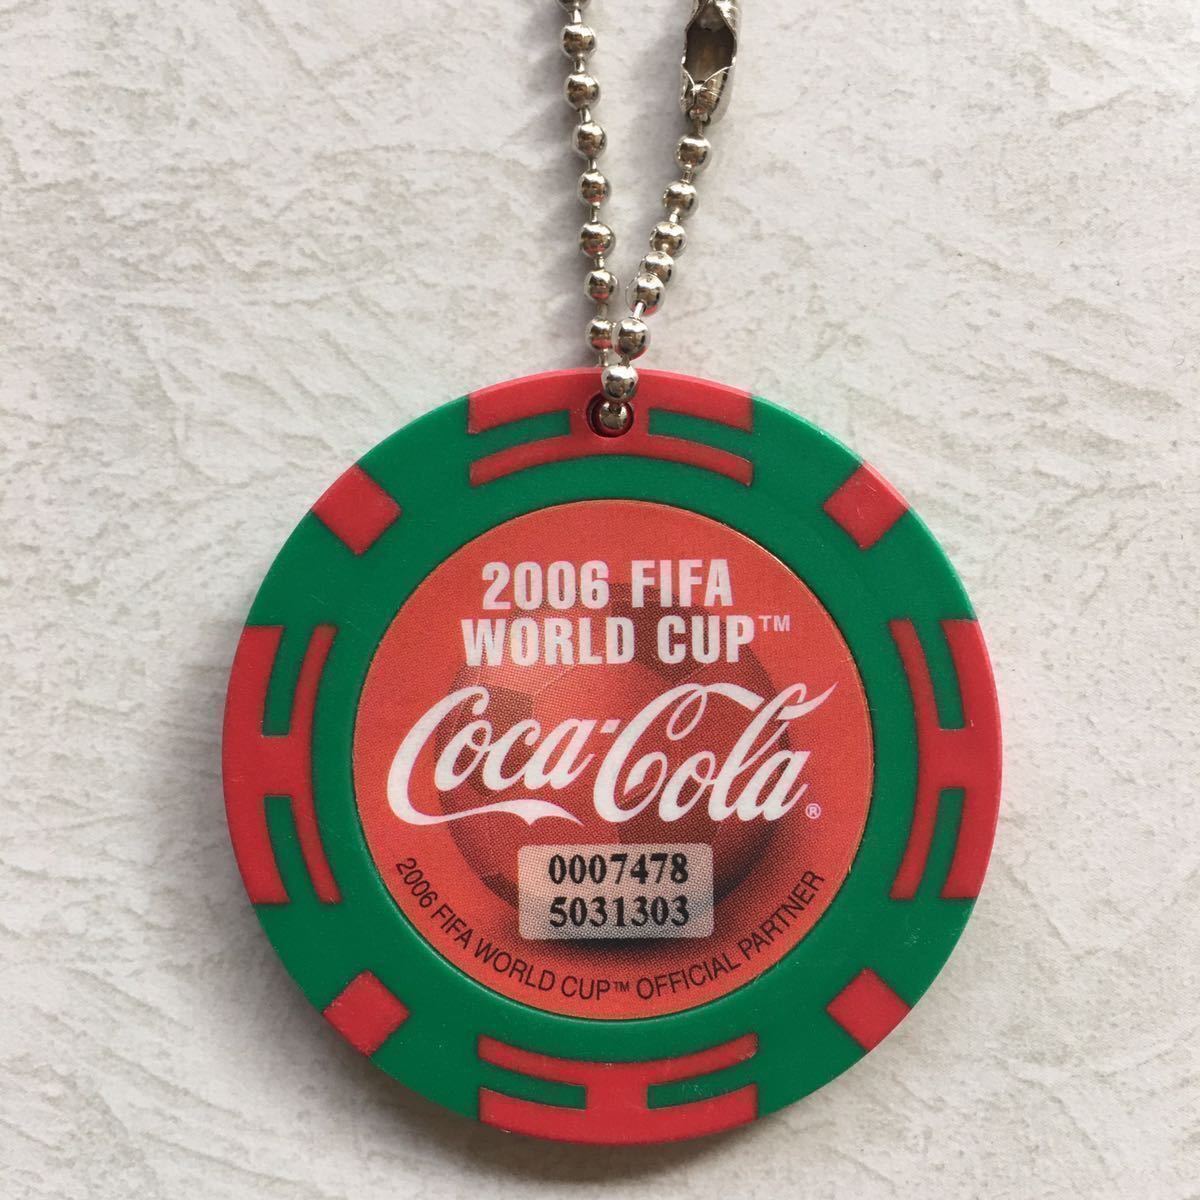  не продается не использовался FIFA World Cup 2006 Coca Cola избранные товары полотенце urug I chip ремешок Portugal Хорватия Чехия Mexico 